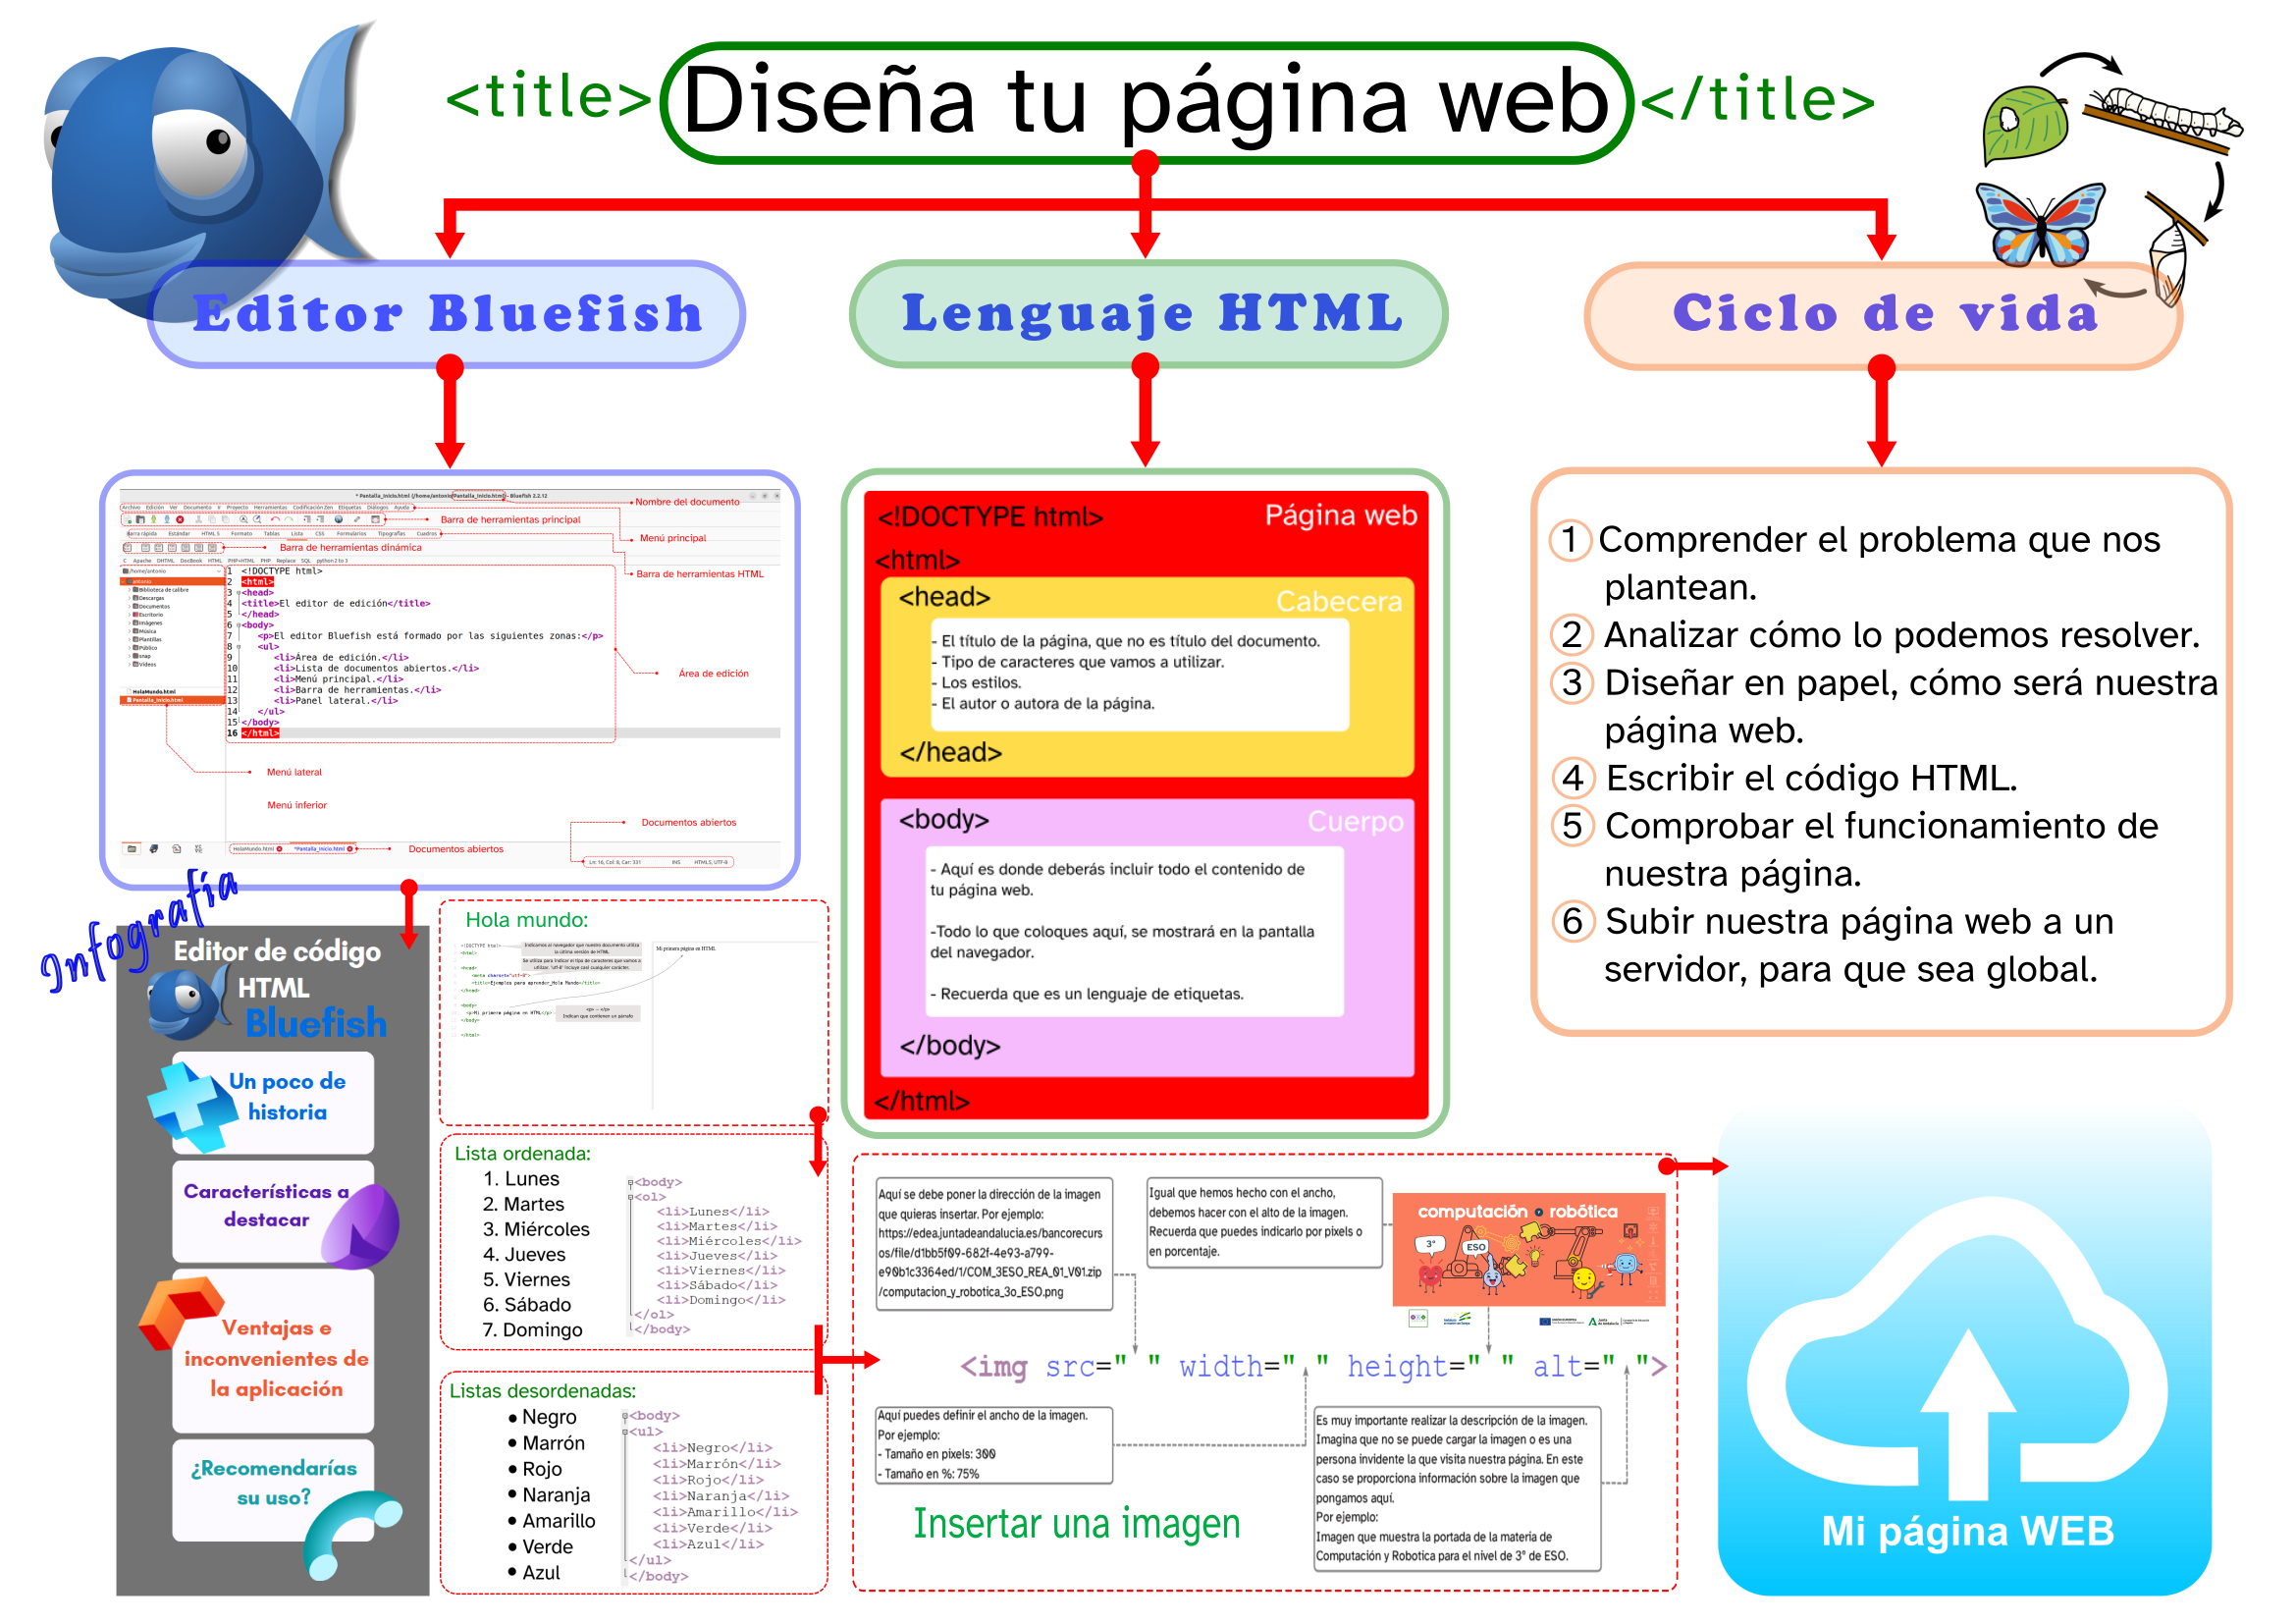 Imagen que muestra el esquema final del documento. Se repasan aspectos relacionados con el ciclo de vida de una página web, el editor Bluefish y el lenguaje HTML.